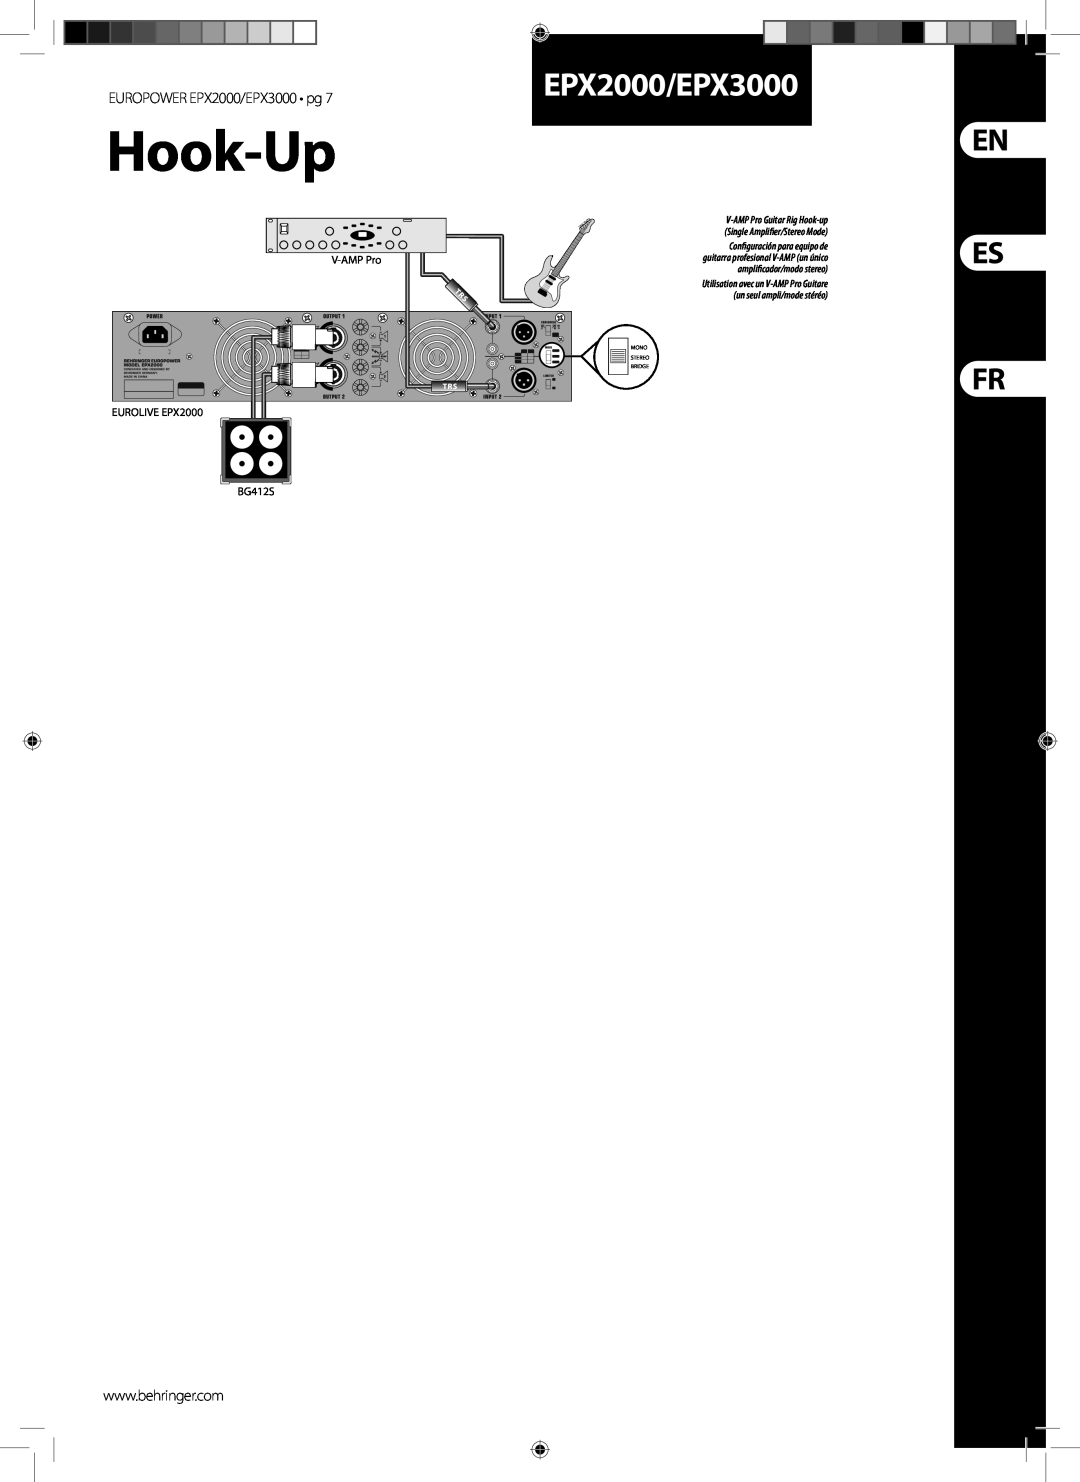 Behringer manual Es Fr, EPX2000/EPX3000, Hook-Up 